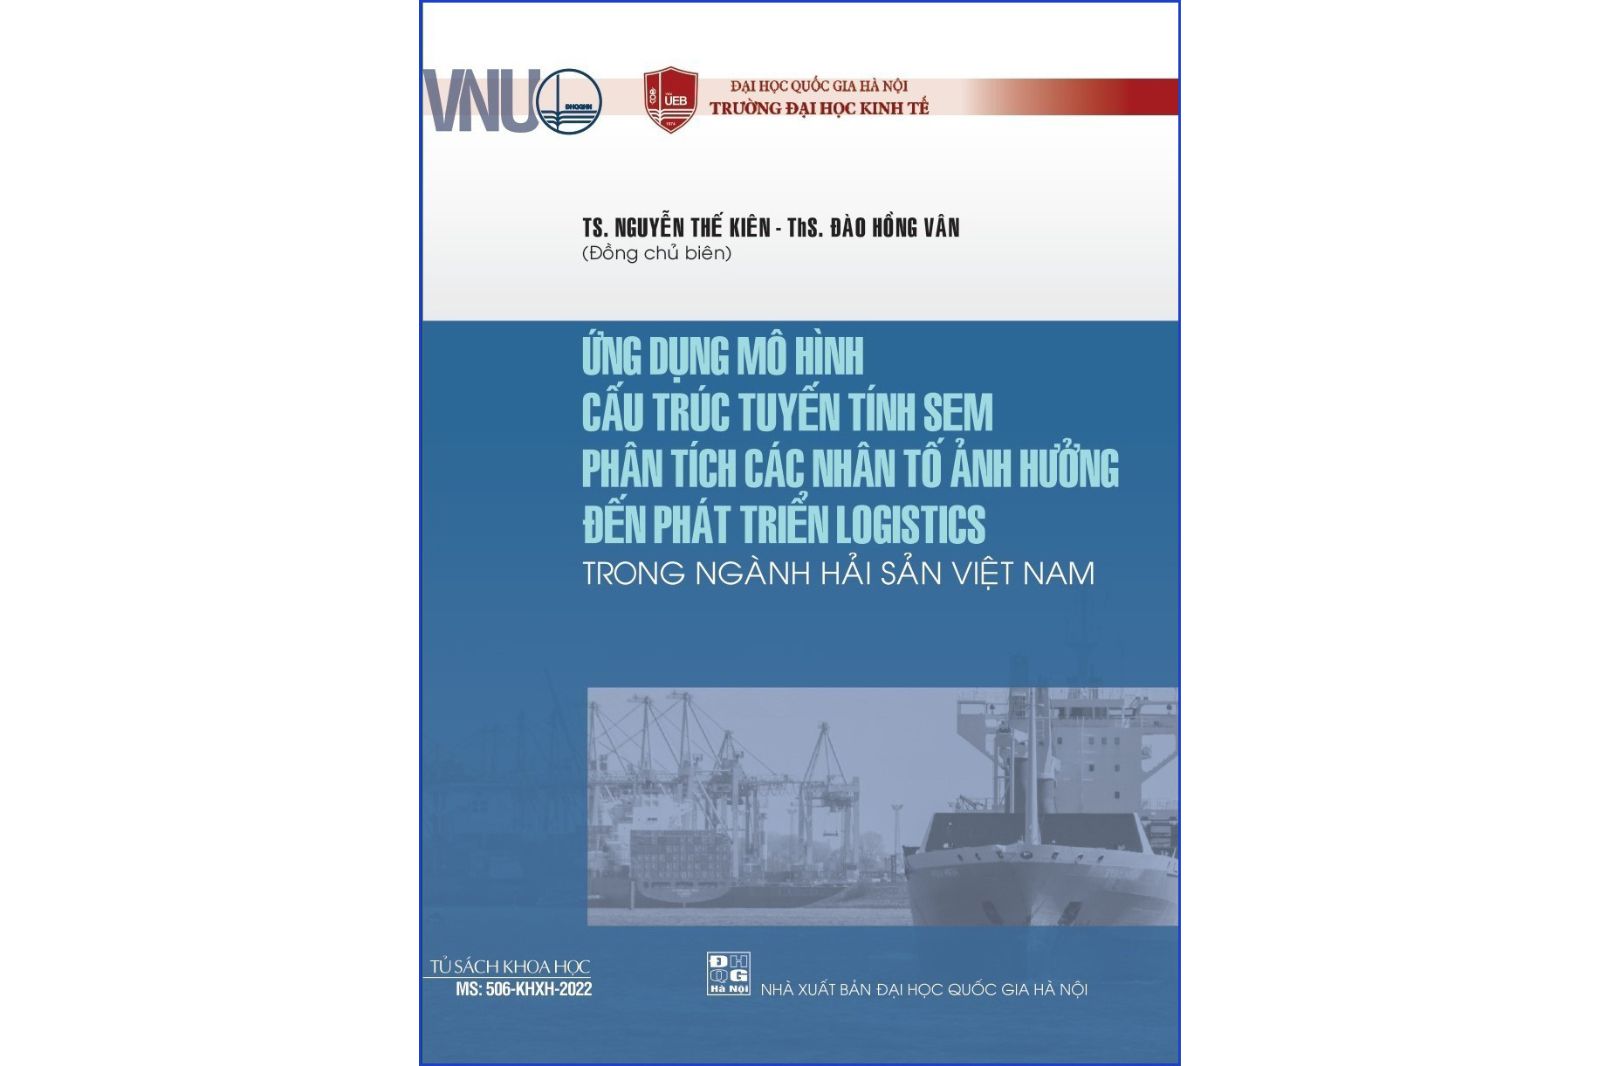 Ứng dụng mô hình cấu trúc tuyến tính SEM phân tích các nhân tố ảnh hưởng đến phát triển logistics trong ngành hải sản Việt Nam